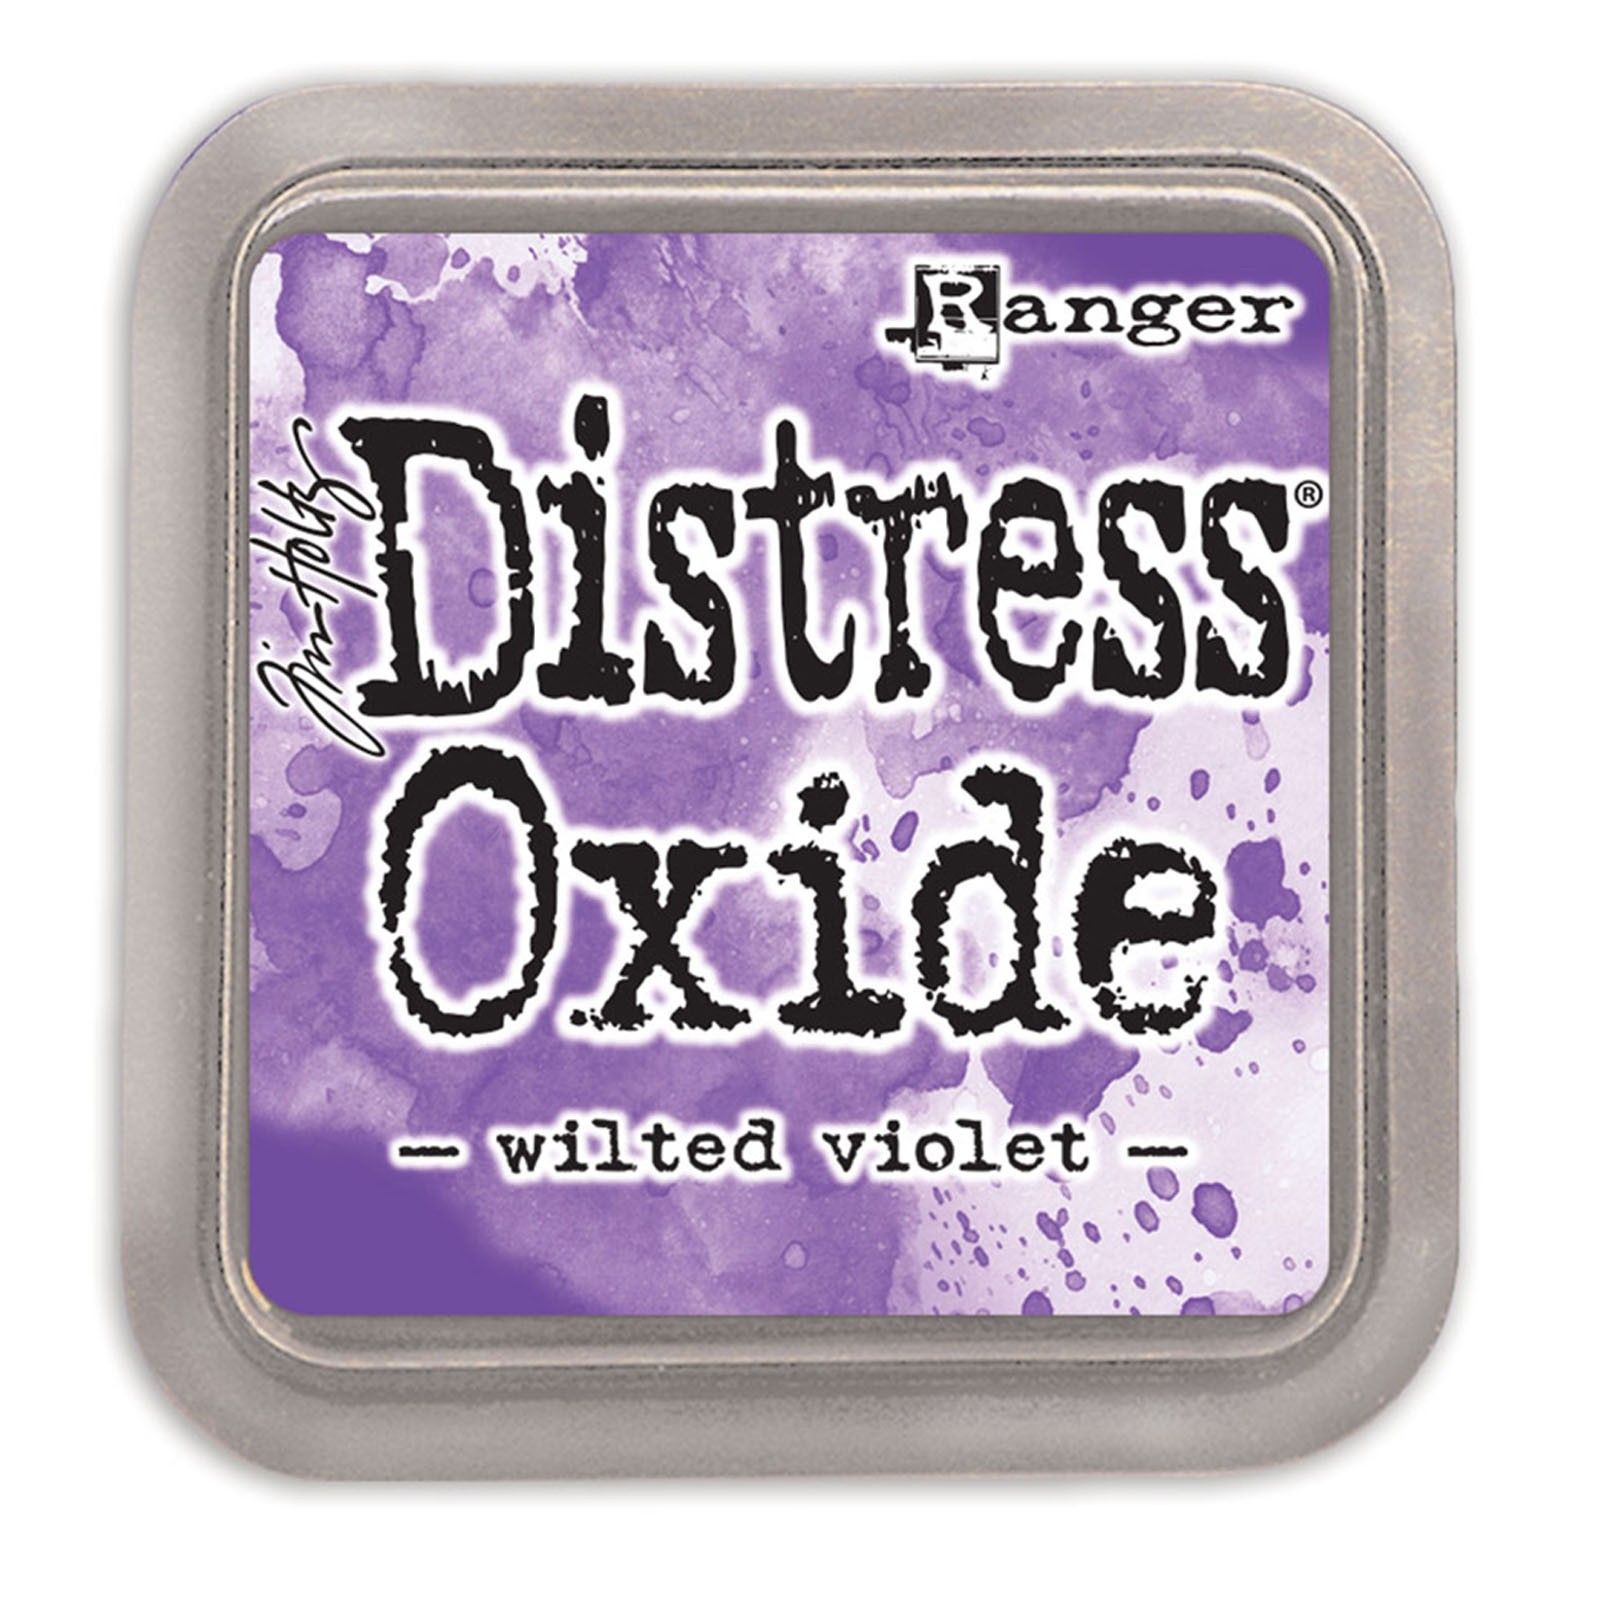 Tim Holtz Distress Oxide Ink Pad - Wilted Violet